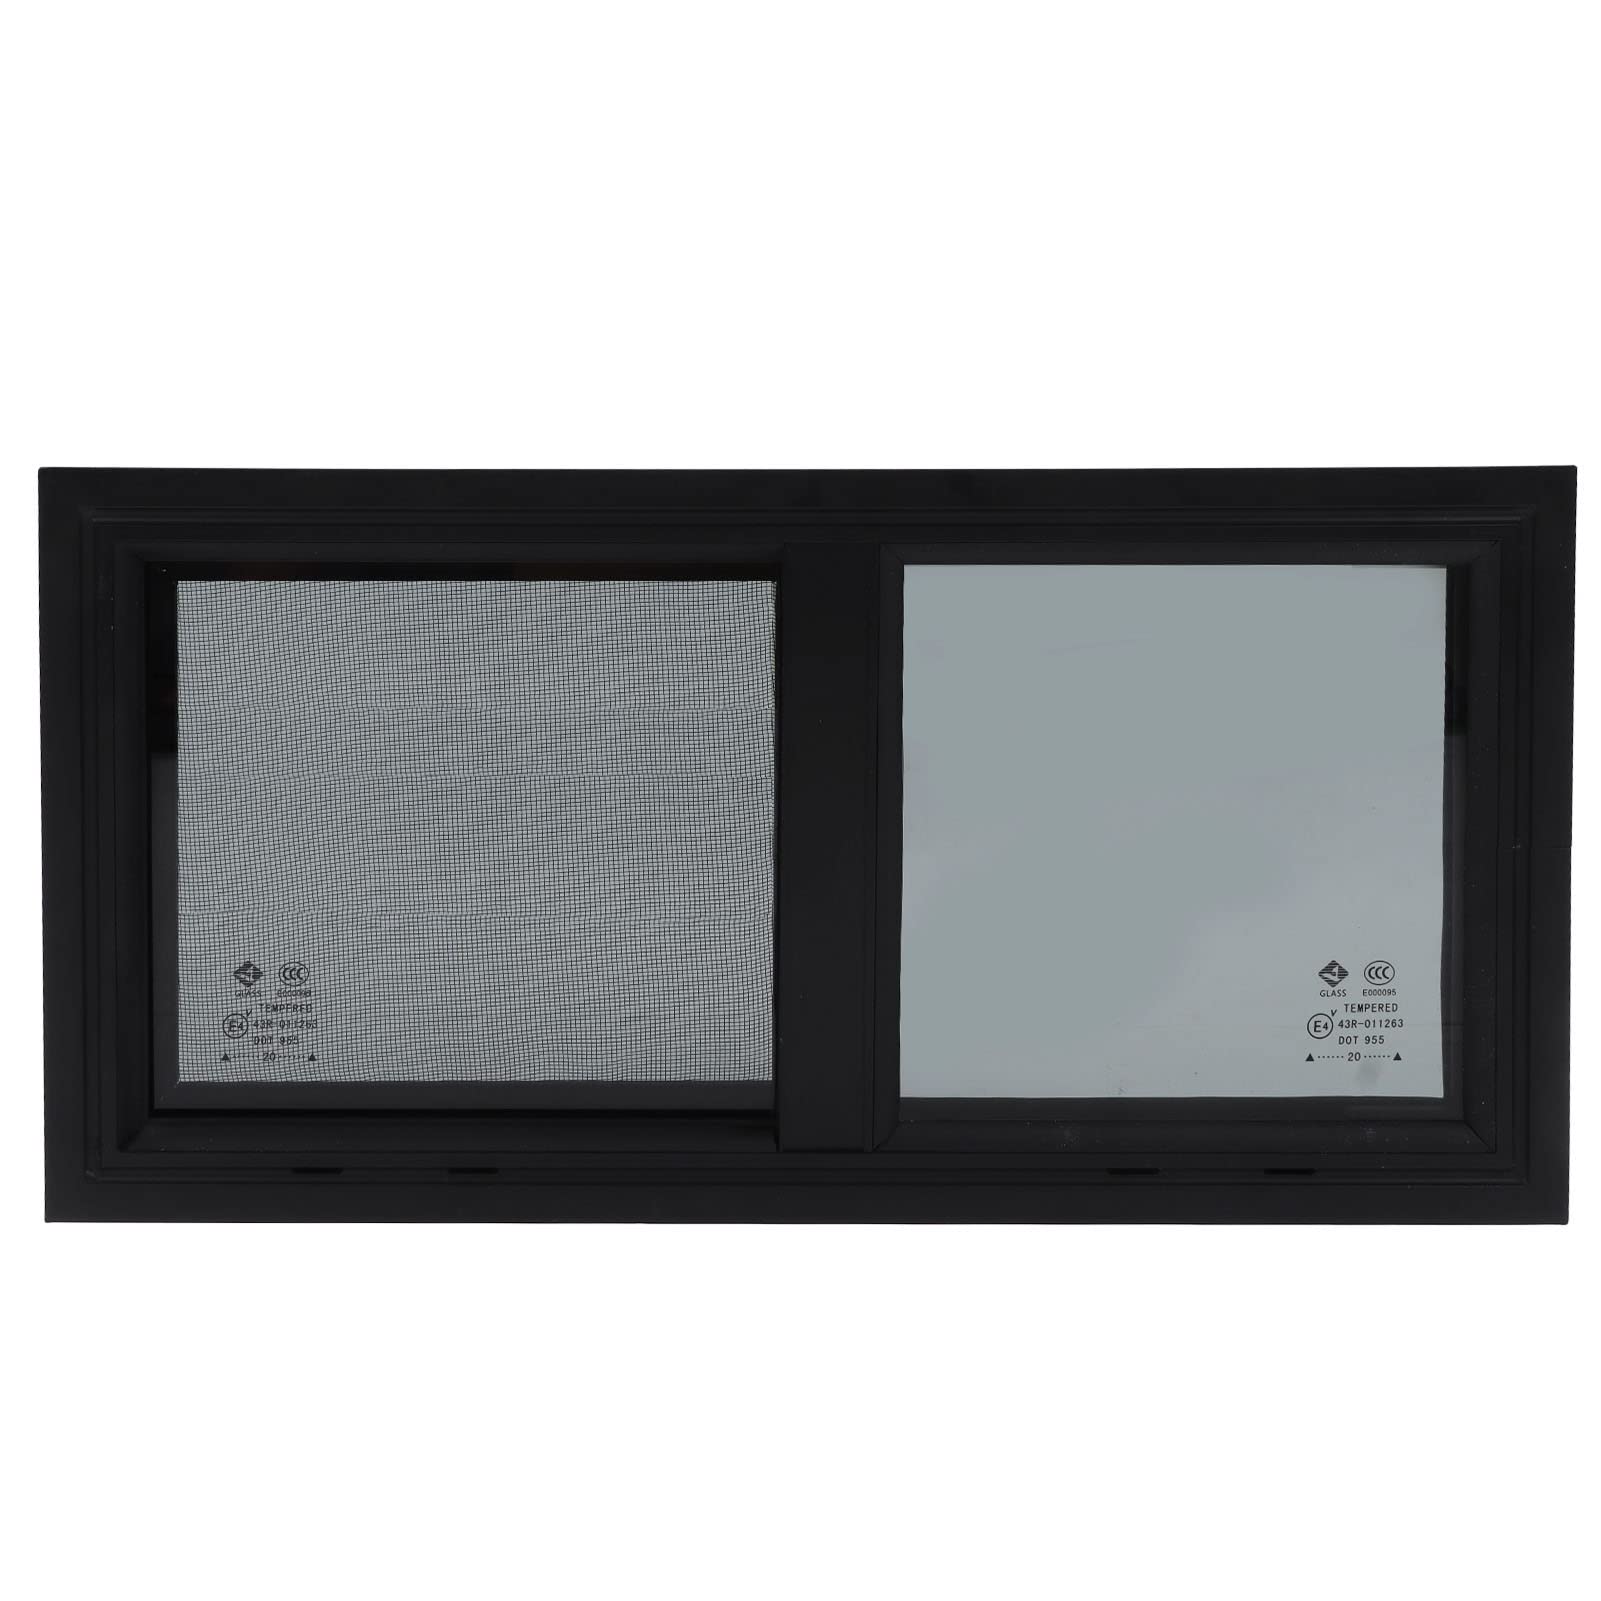 RV-Fenster Für 550 X 260 Mm Fenstergröße Wohnmobilfenster Horizontal Vertikal Verschiebbar mit Sichtschutz-Insektennetzen von Qiilu